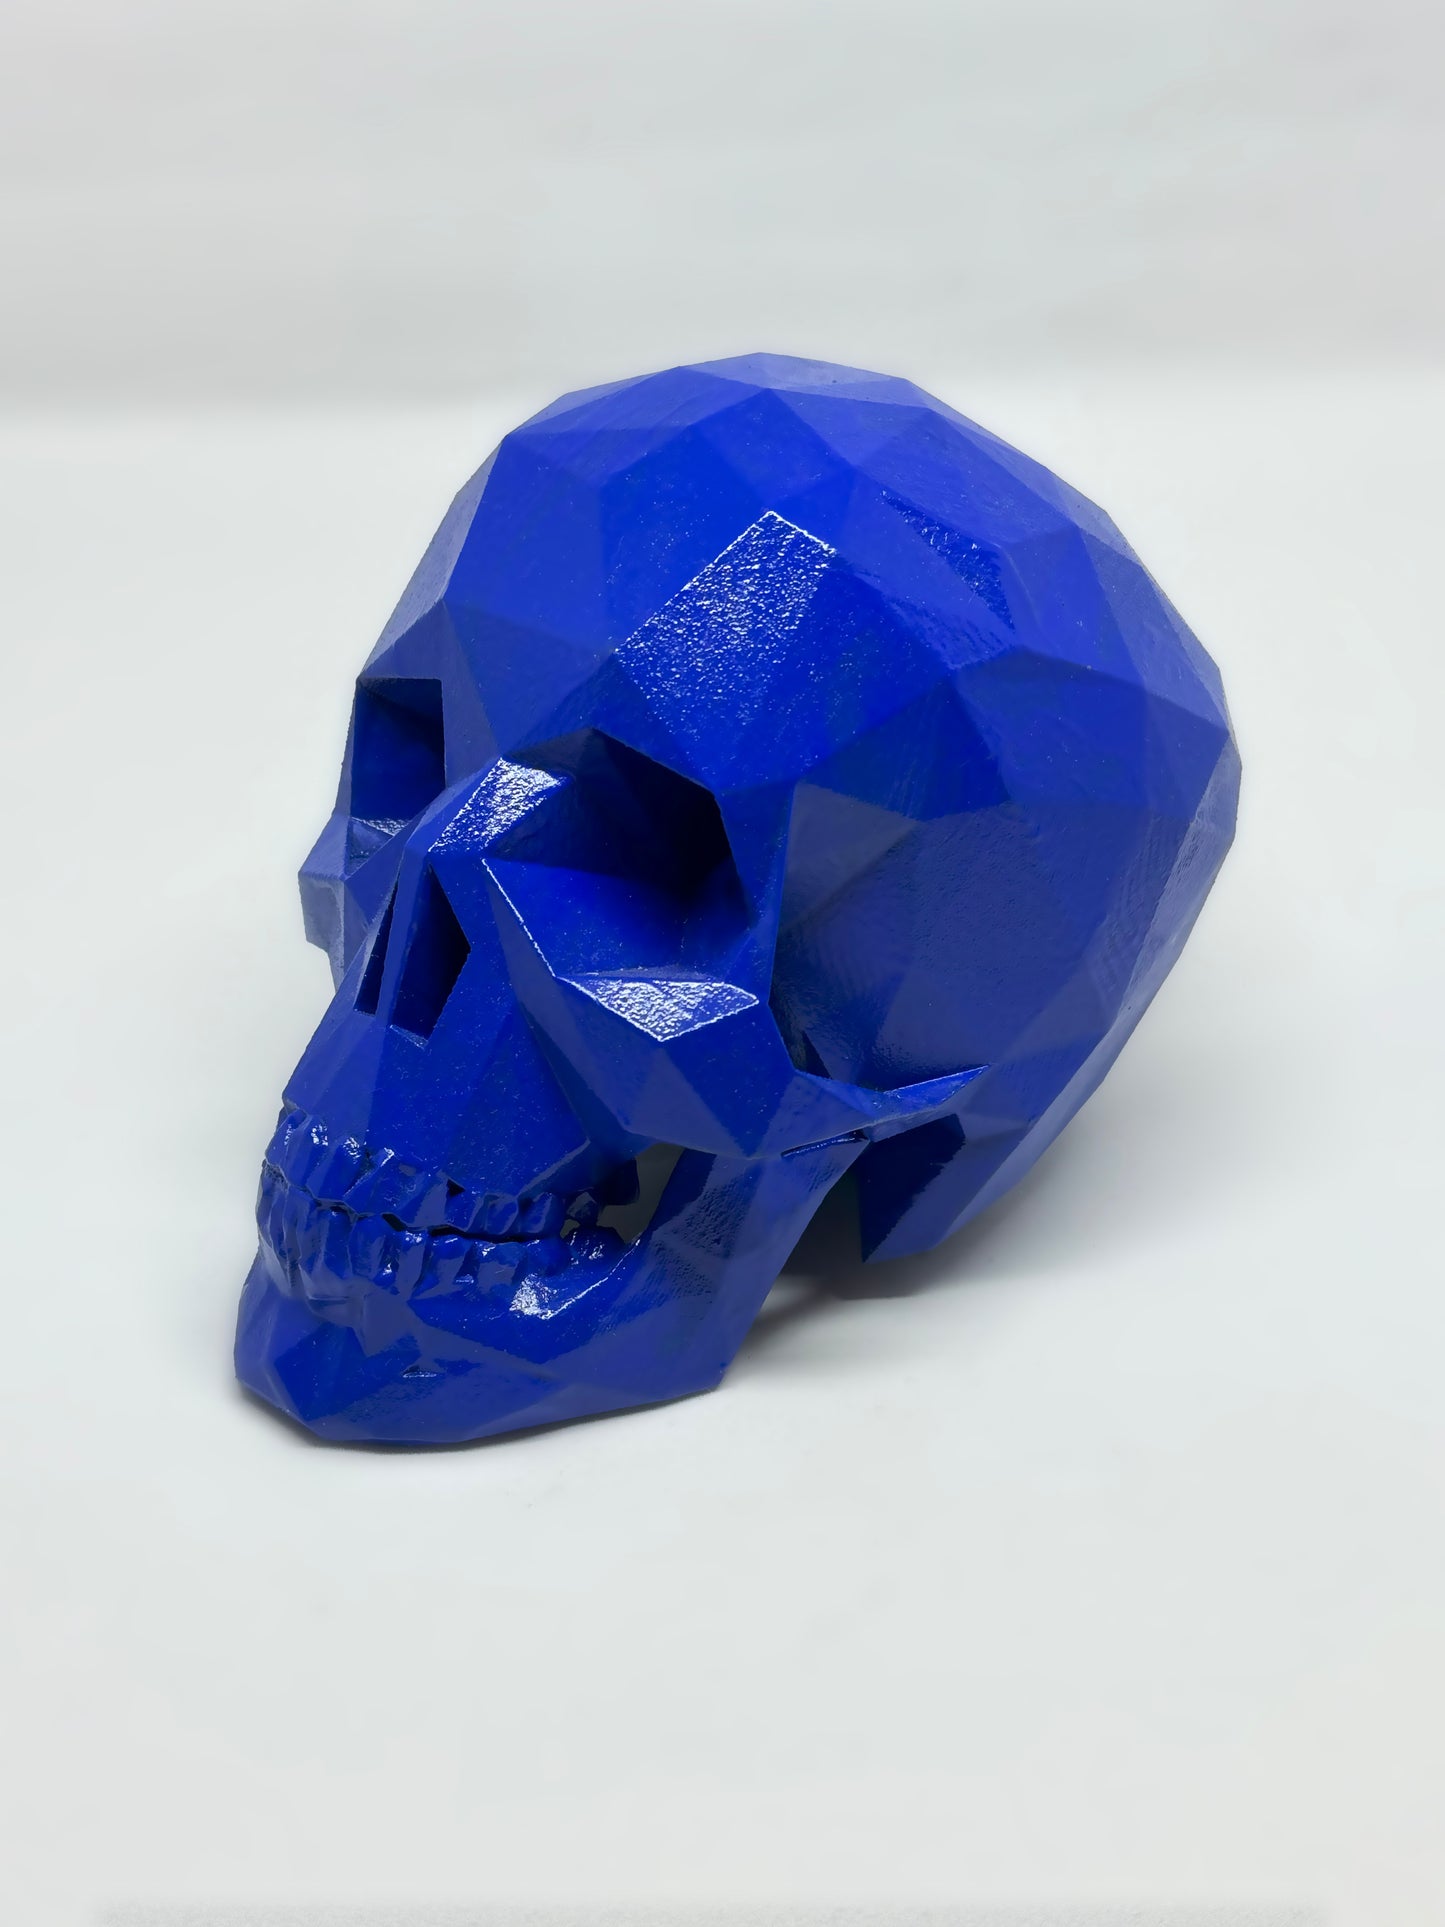 ROYAL BLUE AFTERLIFE SKULL - 3D PRINTED SCULPTURE (1/13)